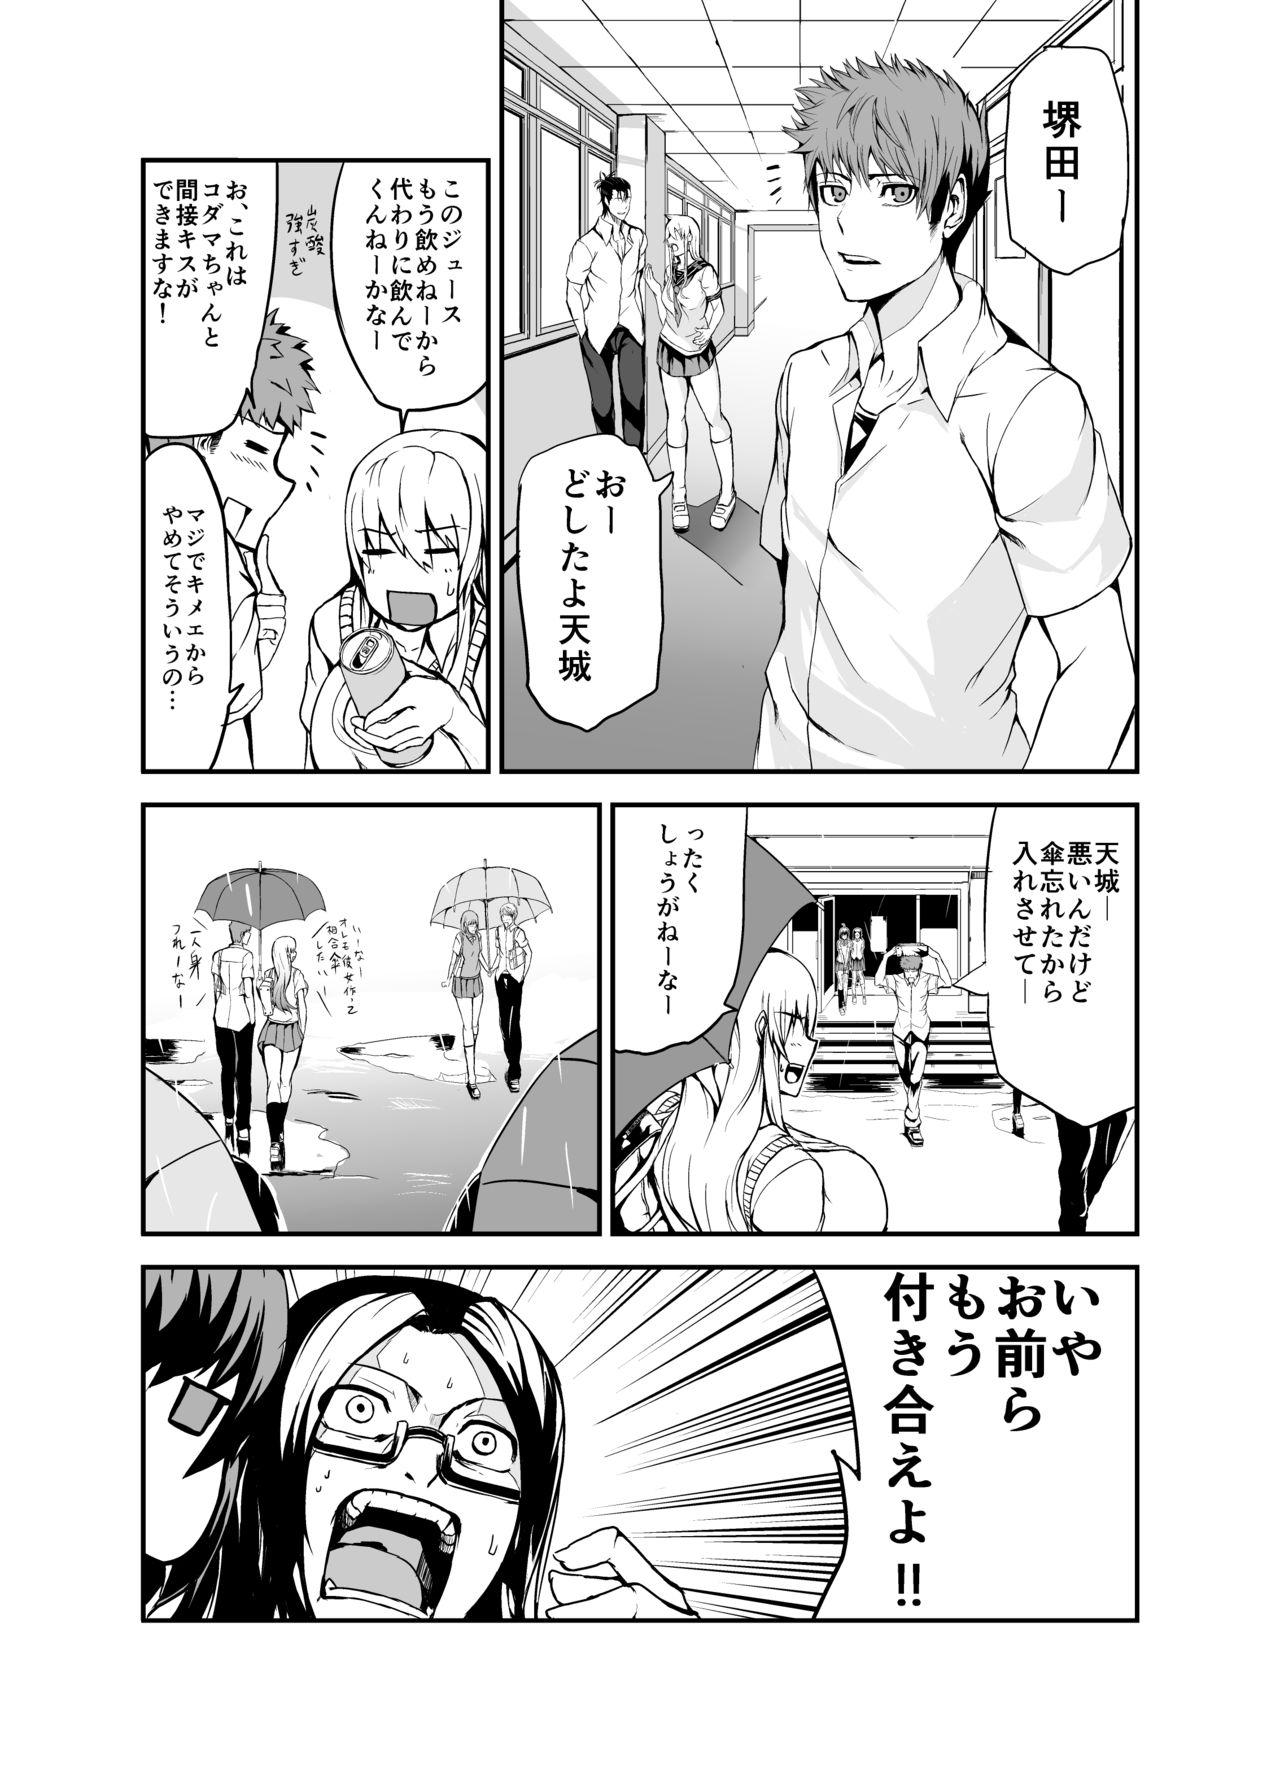 Internal Kodama-chan manga - Original Reversecowgirl - Page 7